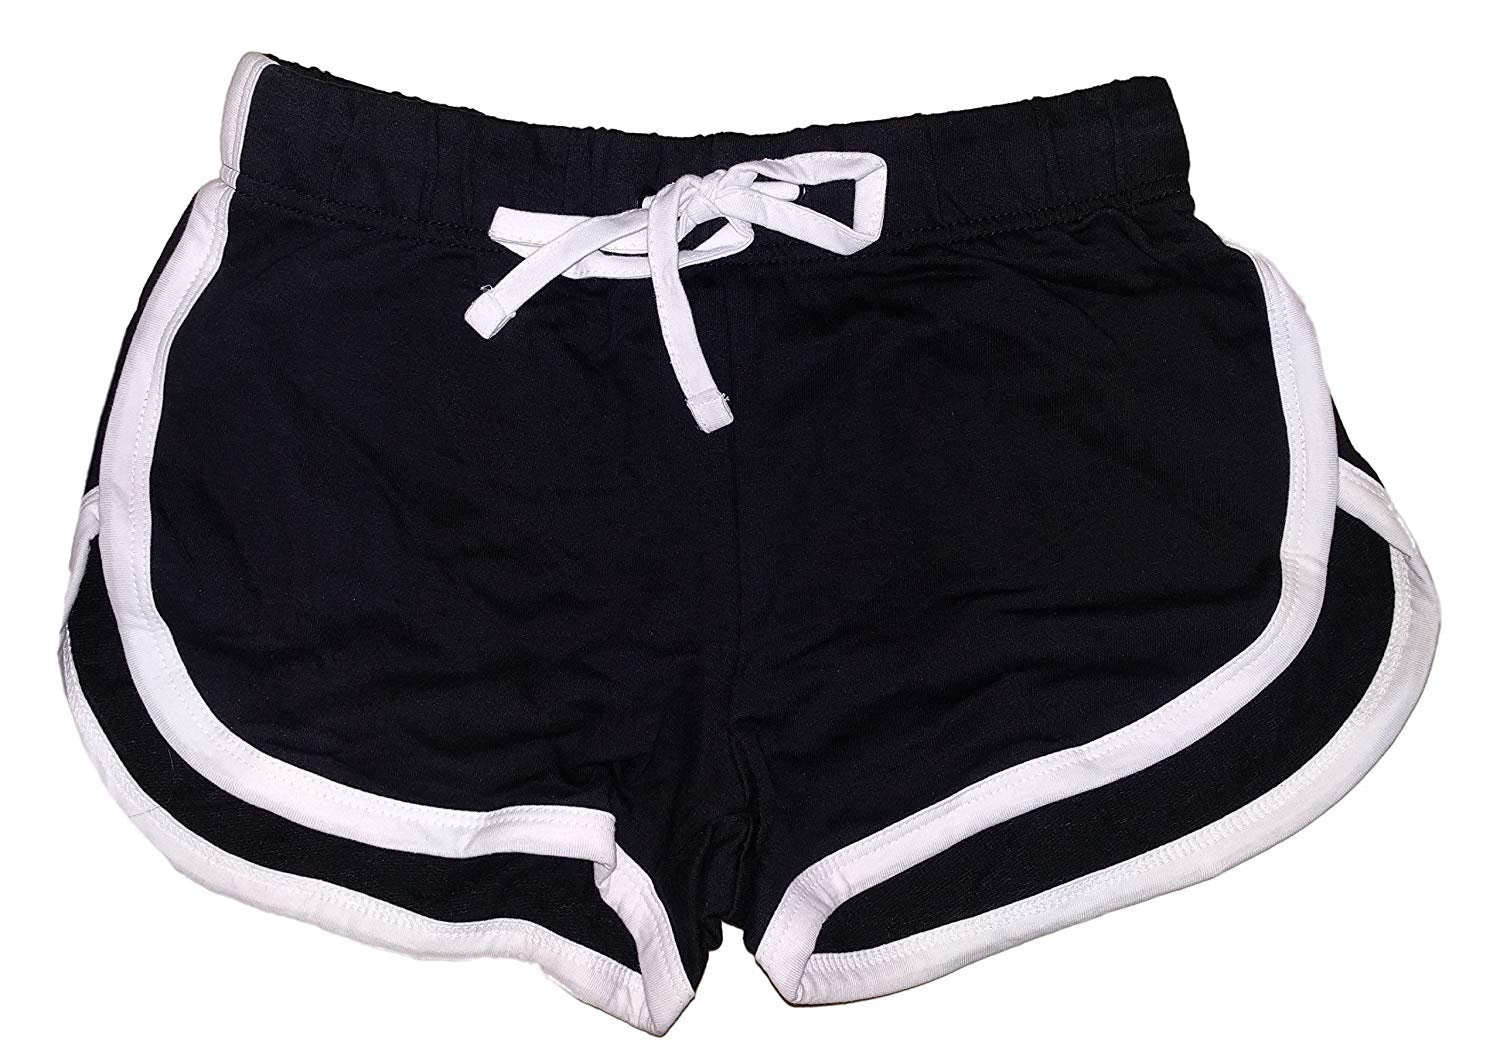 I Love NY Summer Shorts Ladies Black